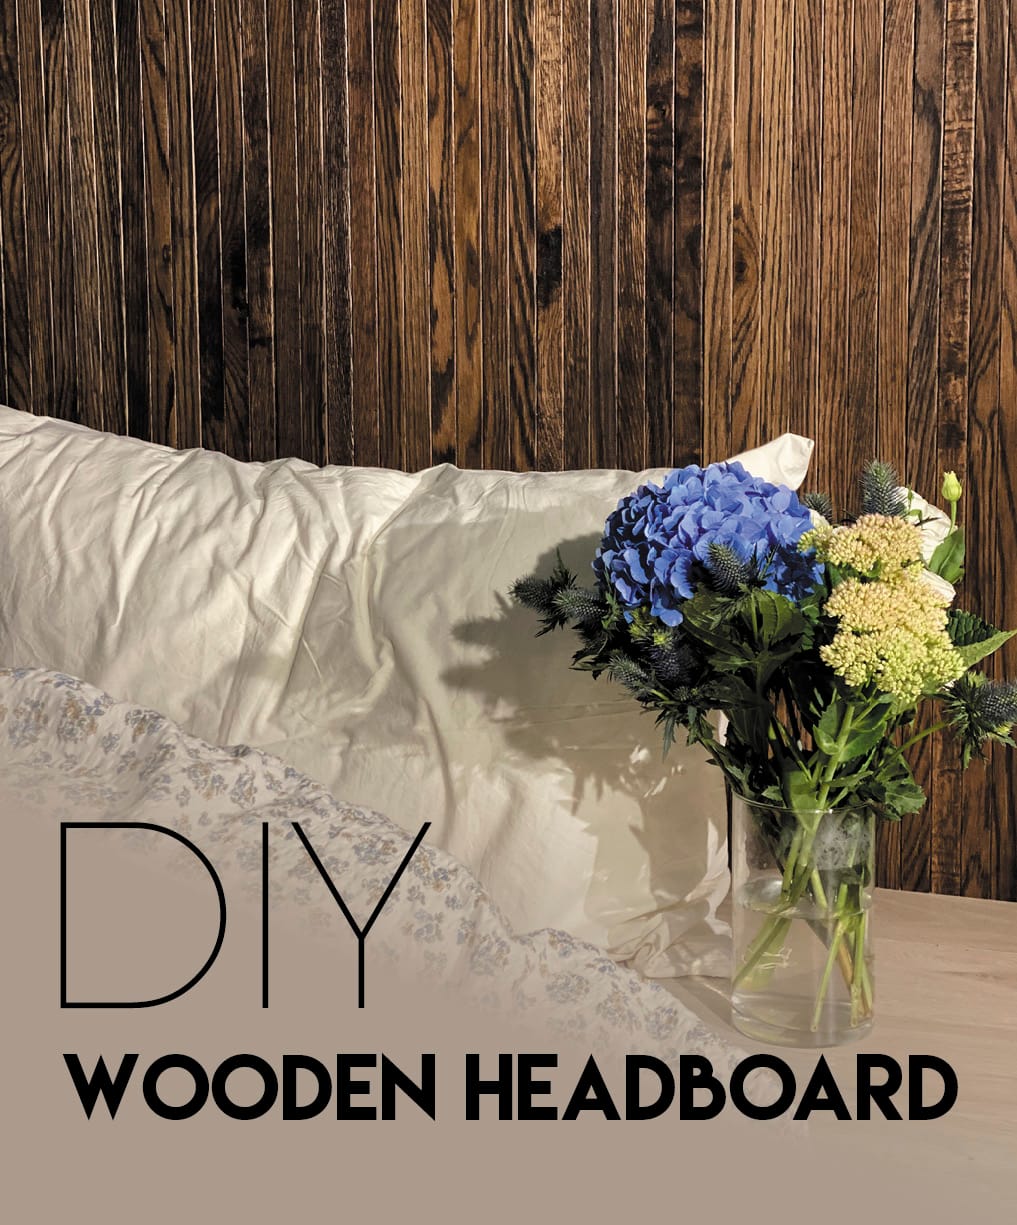 DIY wooden headbord